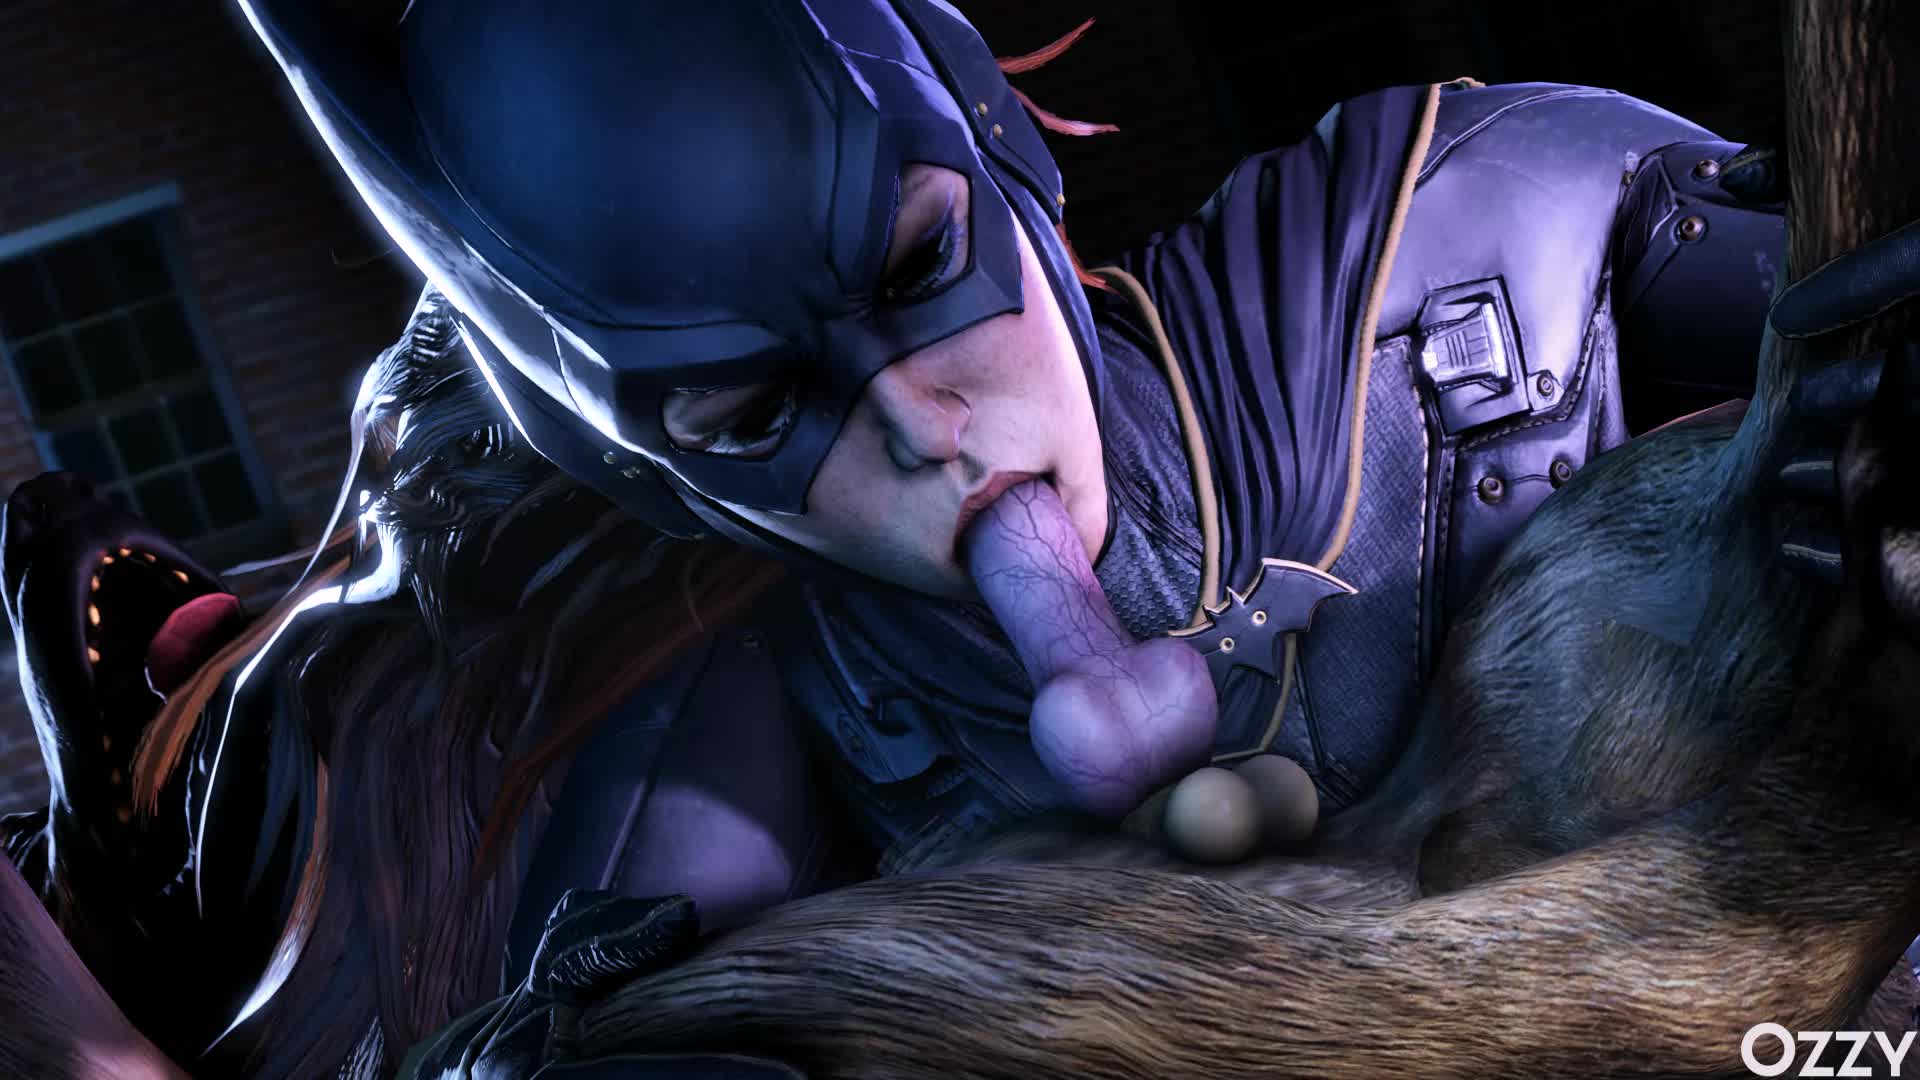 3D Animated Batgirl Batman_(Series) Batman_Arkham_Knight Source_Filmmaker ozzysfm // 1920x1080 // 634.5KB // webm